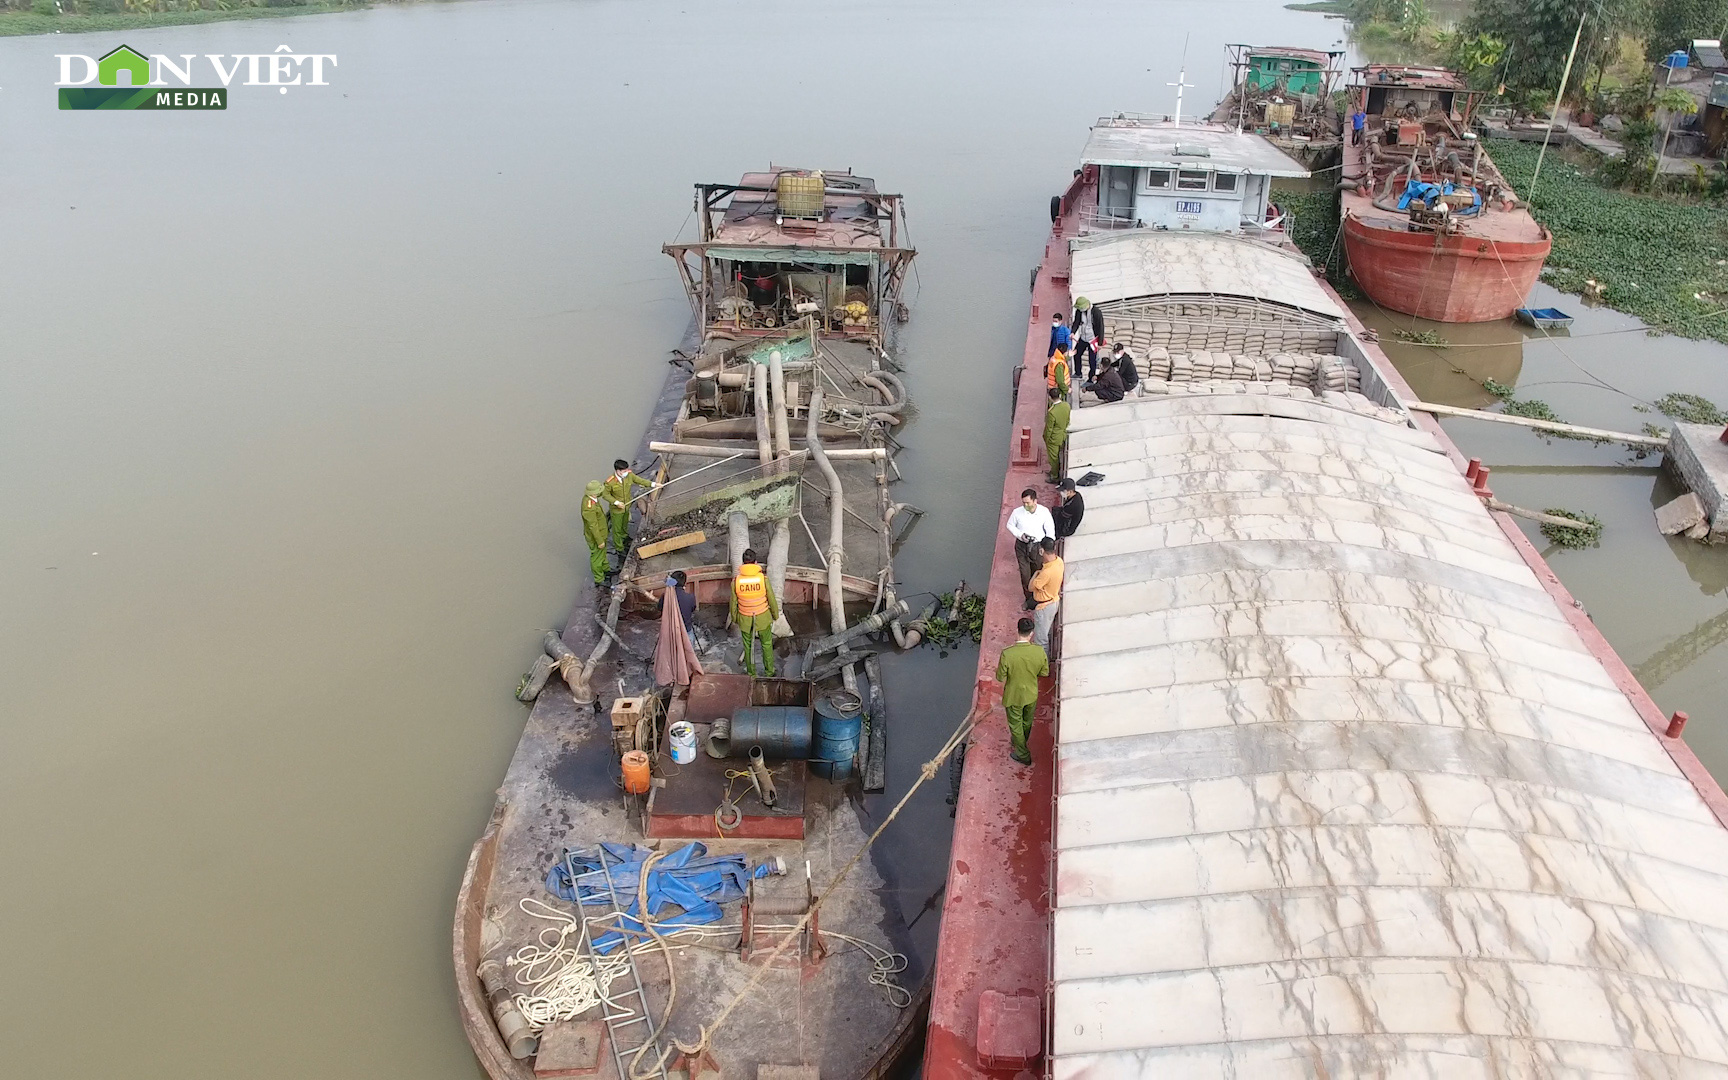 Hải Dương: Bắt quả tang tàu khai thác cát trái phép trên sông Thái Bình